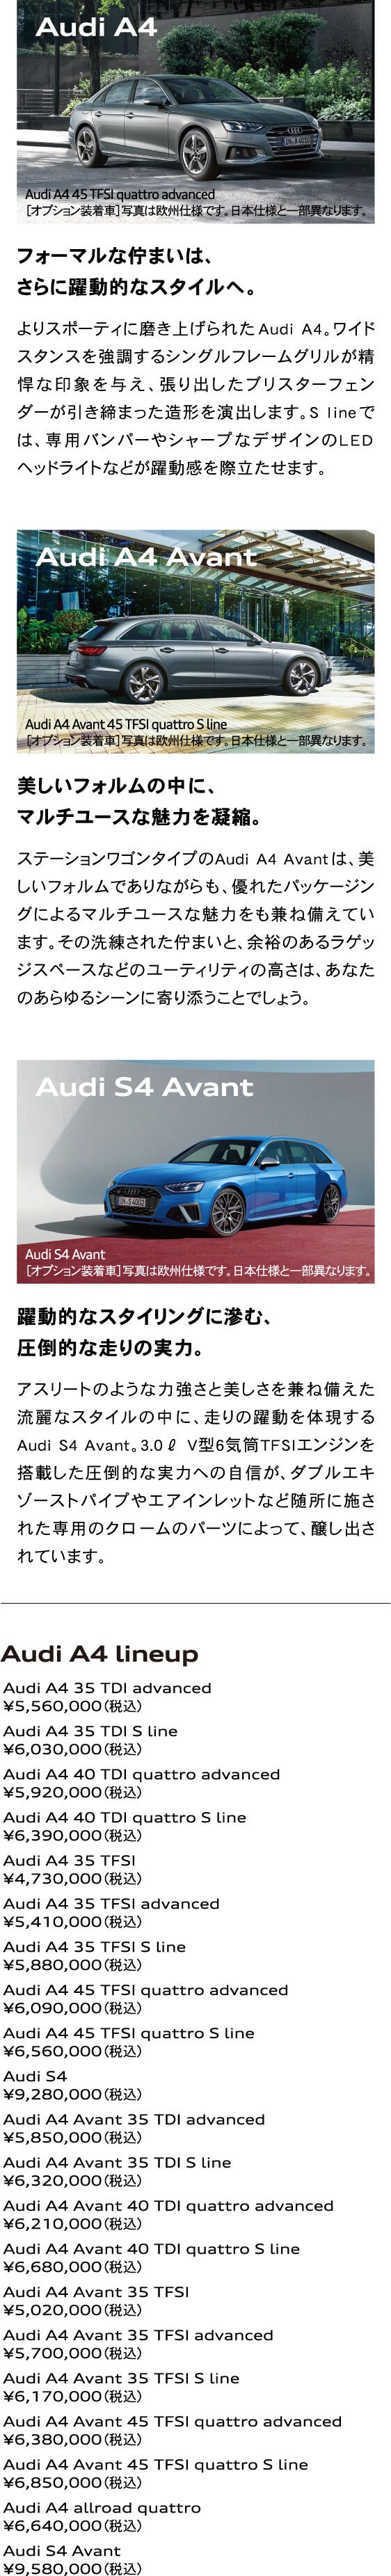 Audi A4 / Audi A4 Avant / Audi S4 Avant